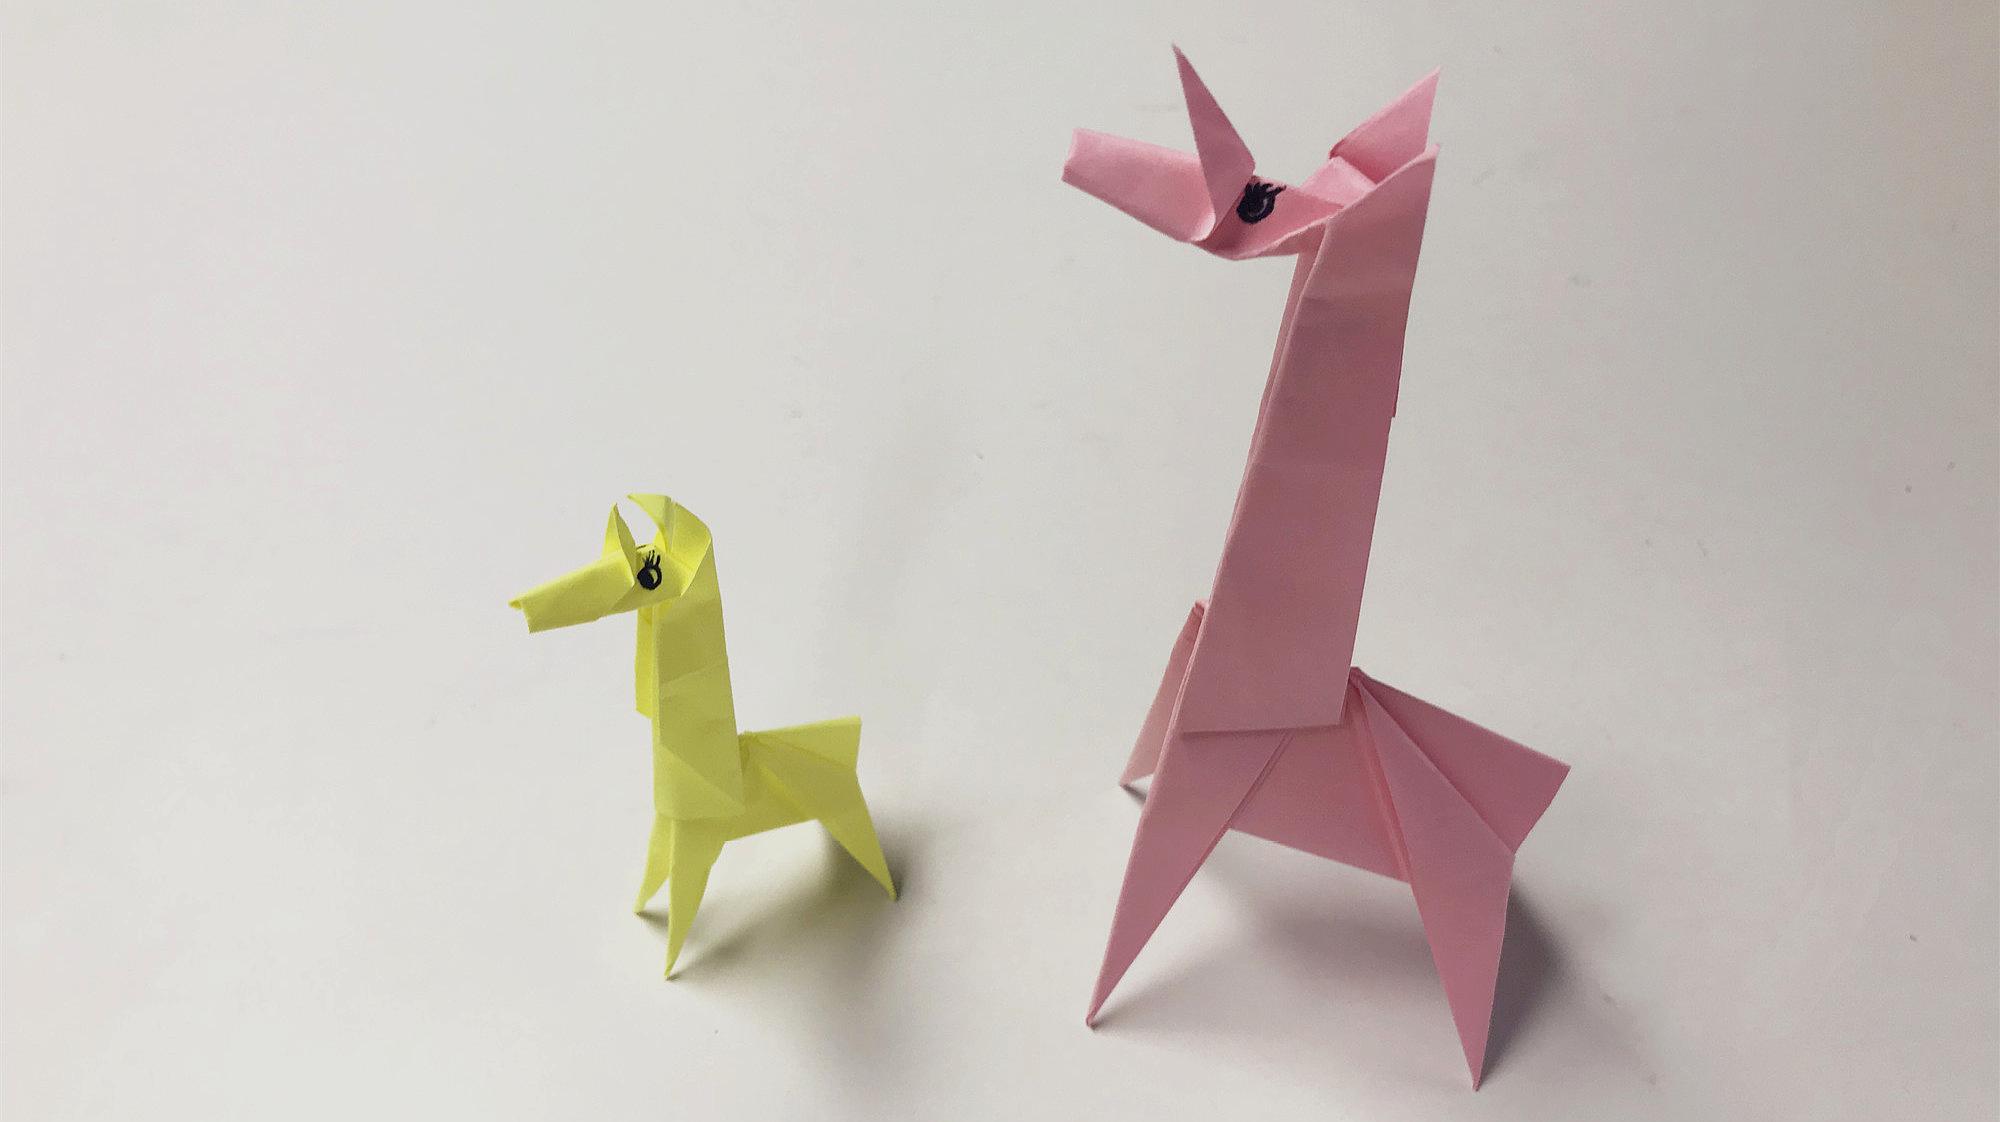 儿童动物折纸:可爱的长颈鹿折叠方法,赶紧试着学习一下吧!